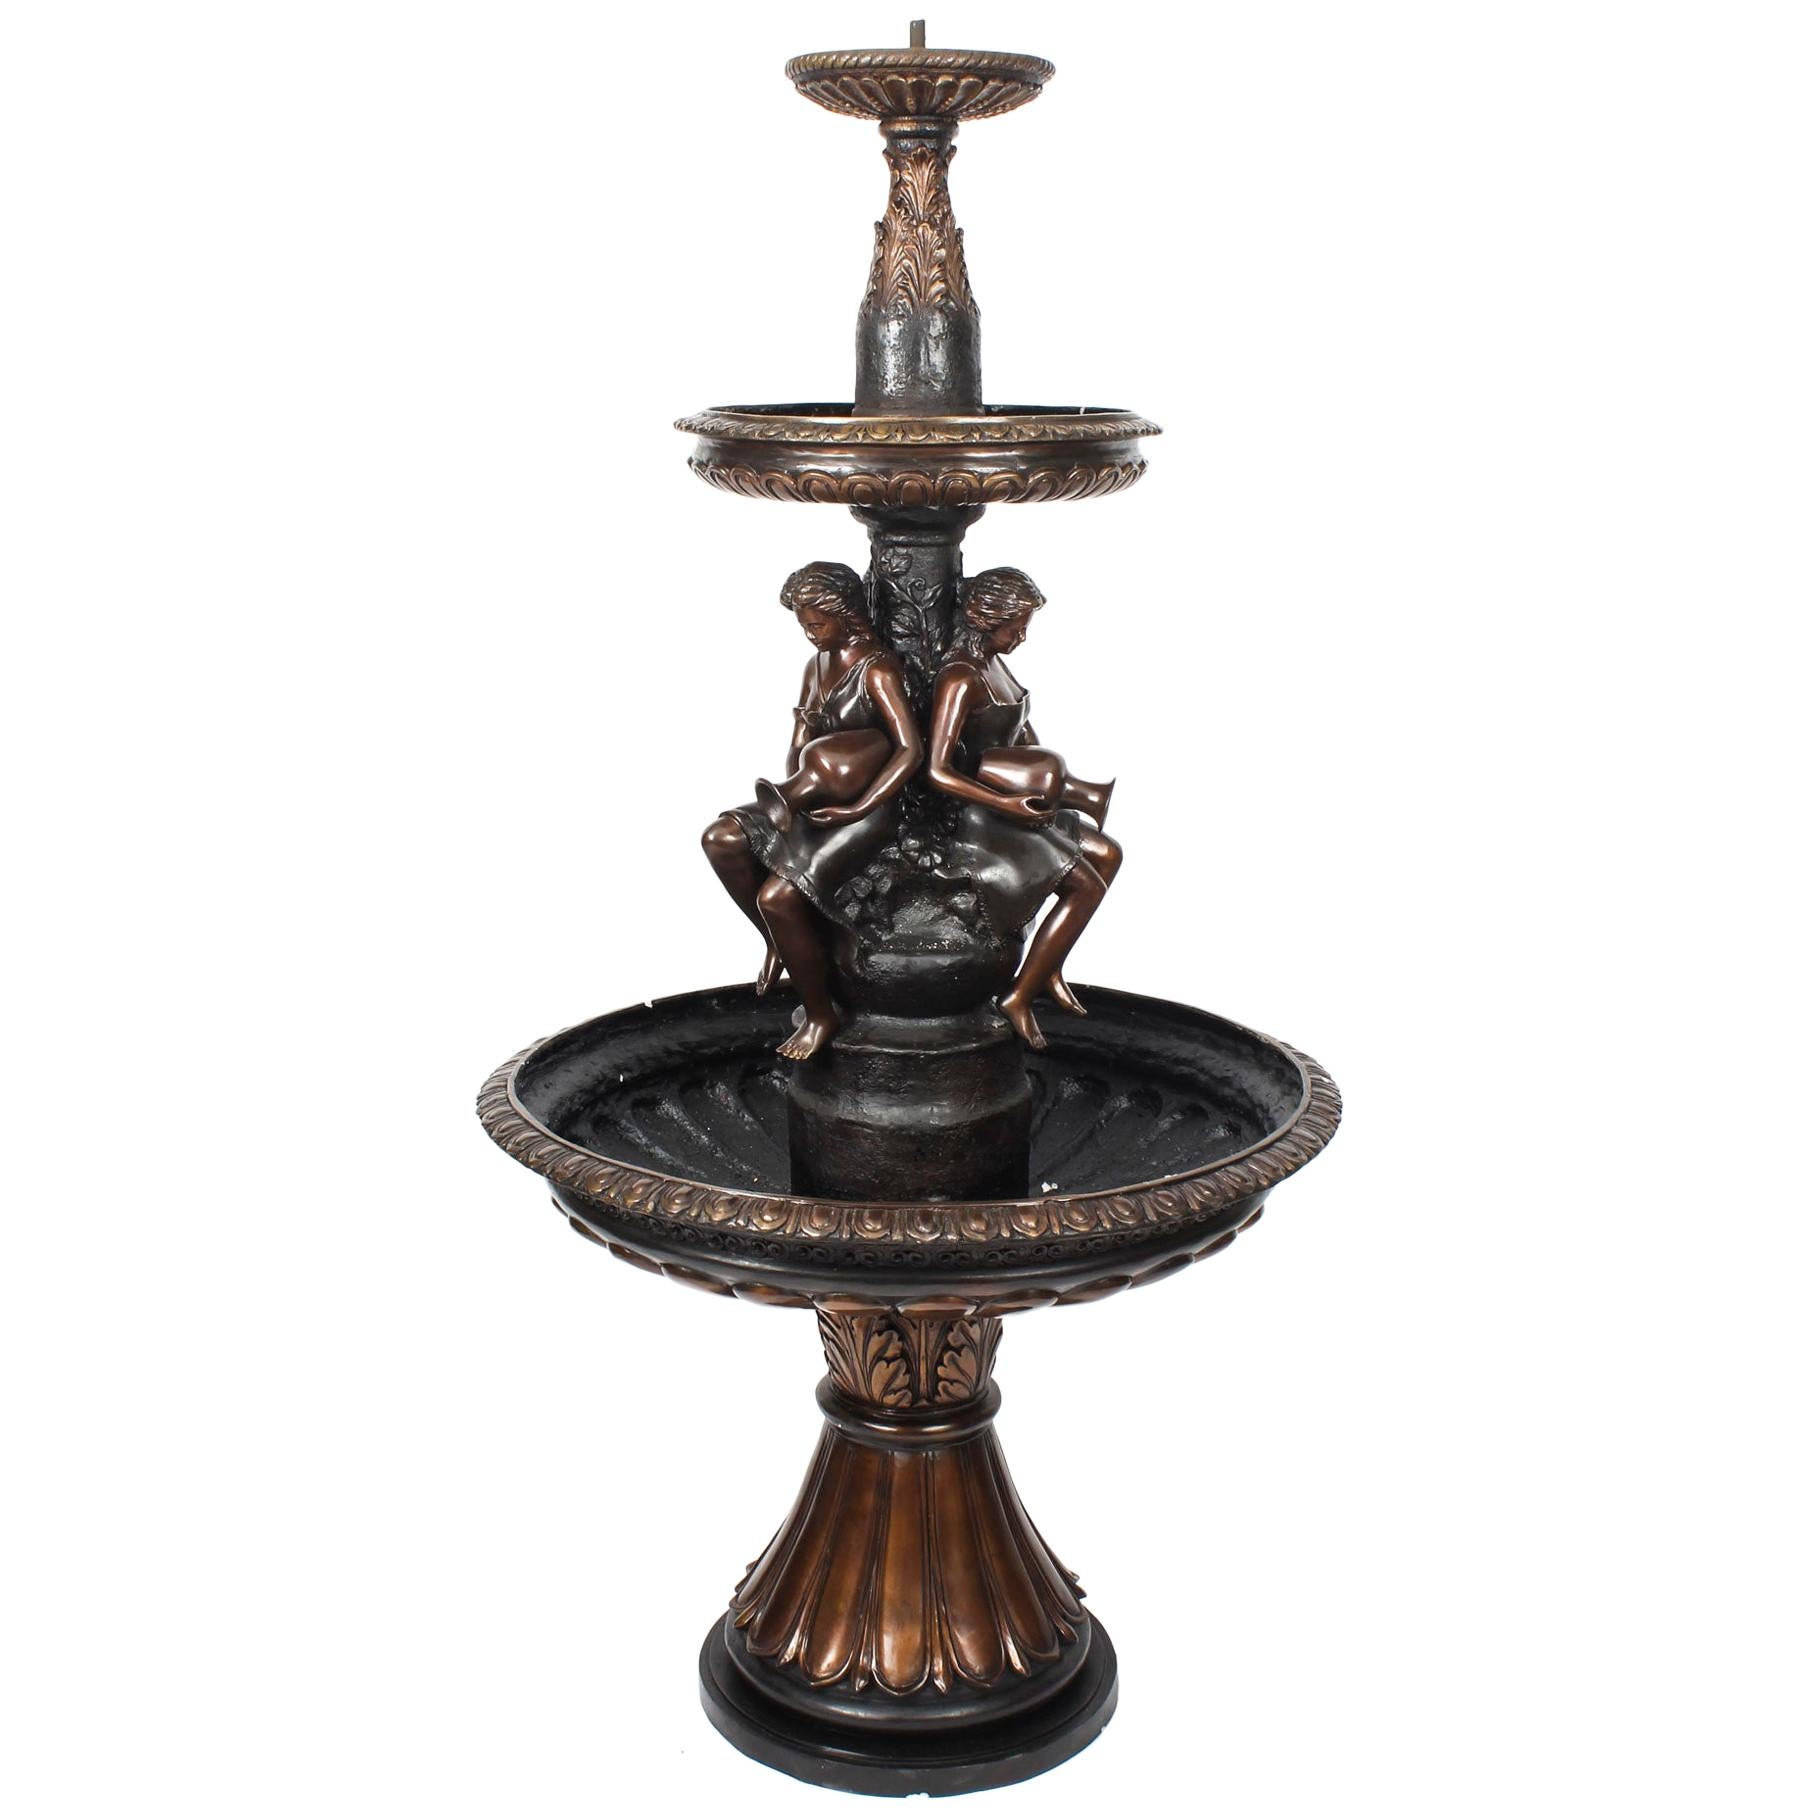 Vintage Bronze Three-Tier Free Standing or Pond Garden Fountain, 20th Century